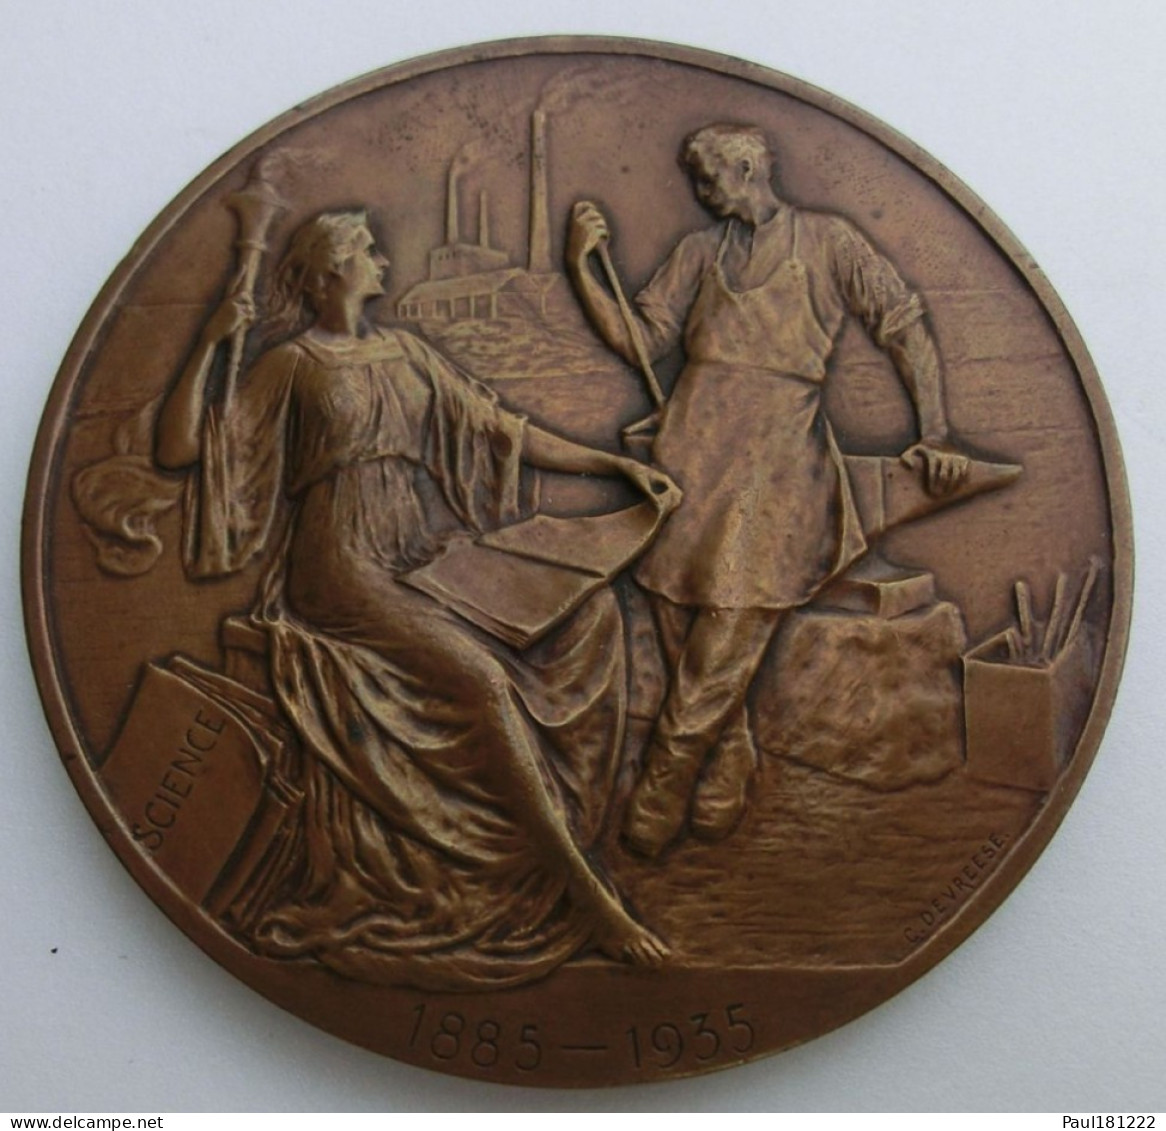 Médaille Bronze, Société Belge Des Ingénieurs Et Industriels, 1885-1935, Jubilé, Devreese, 75mm - Unternehmen